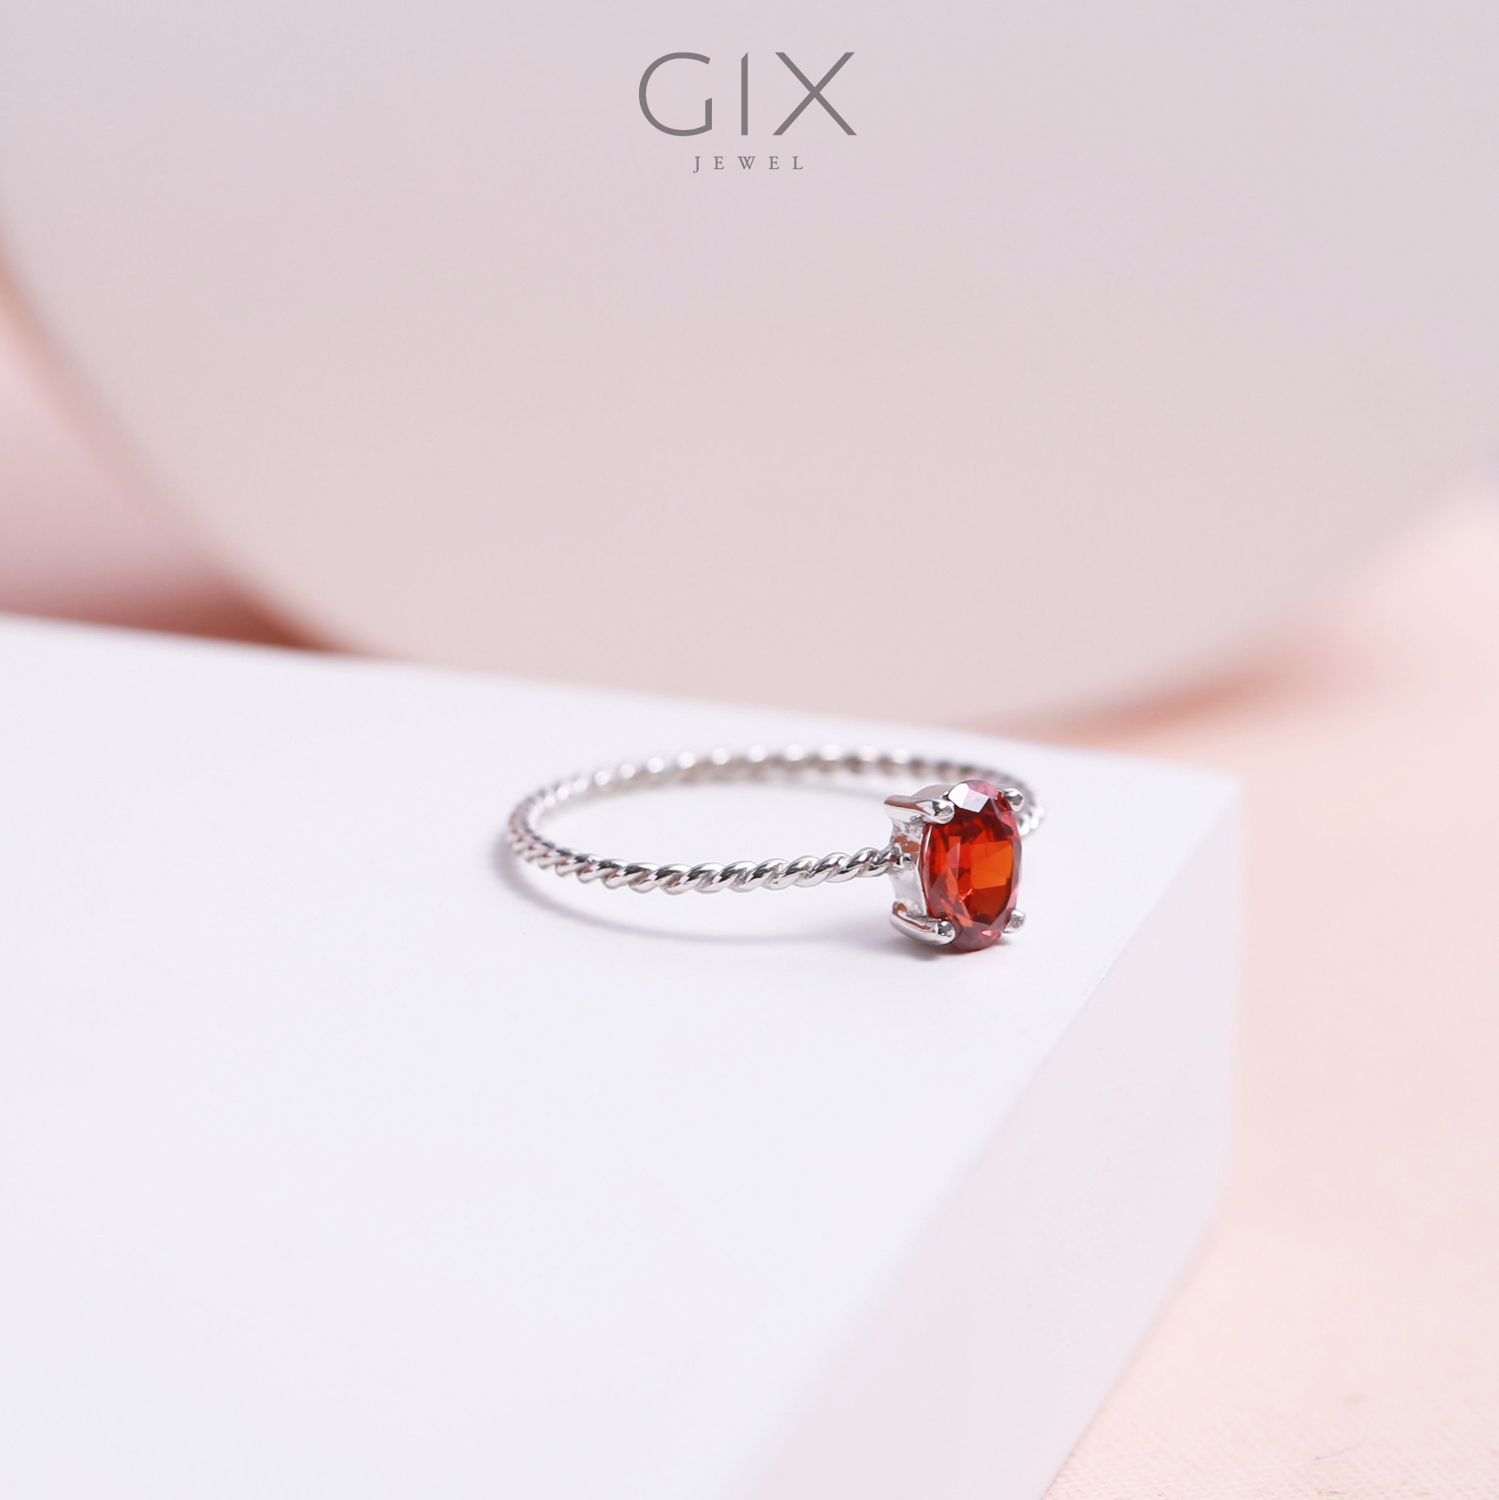  Nhẫn bạc cho nữ mạ vàng đai xoắn đá đỏ đẹp Gix Jewel SPGN15 